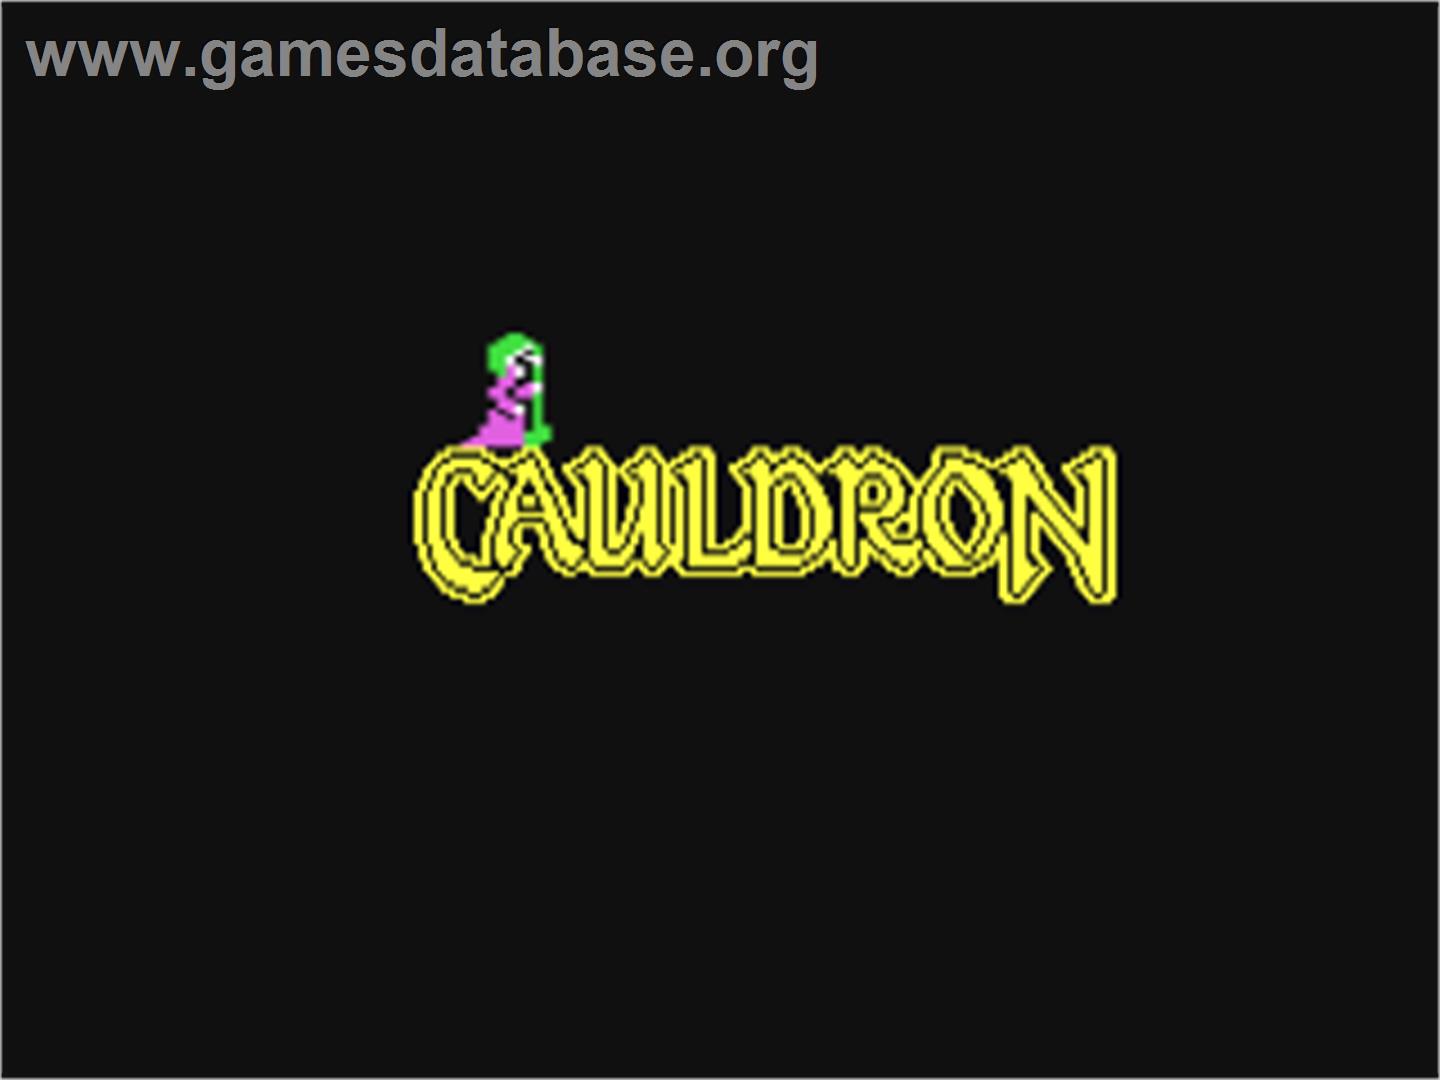 Cauldron - Commodore 64 - Artwork - Title Screen